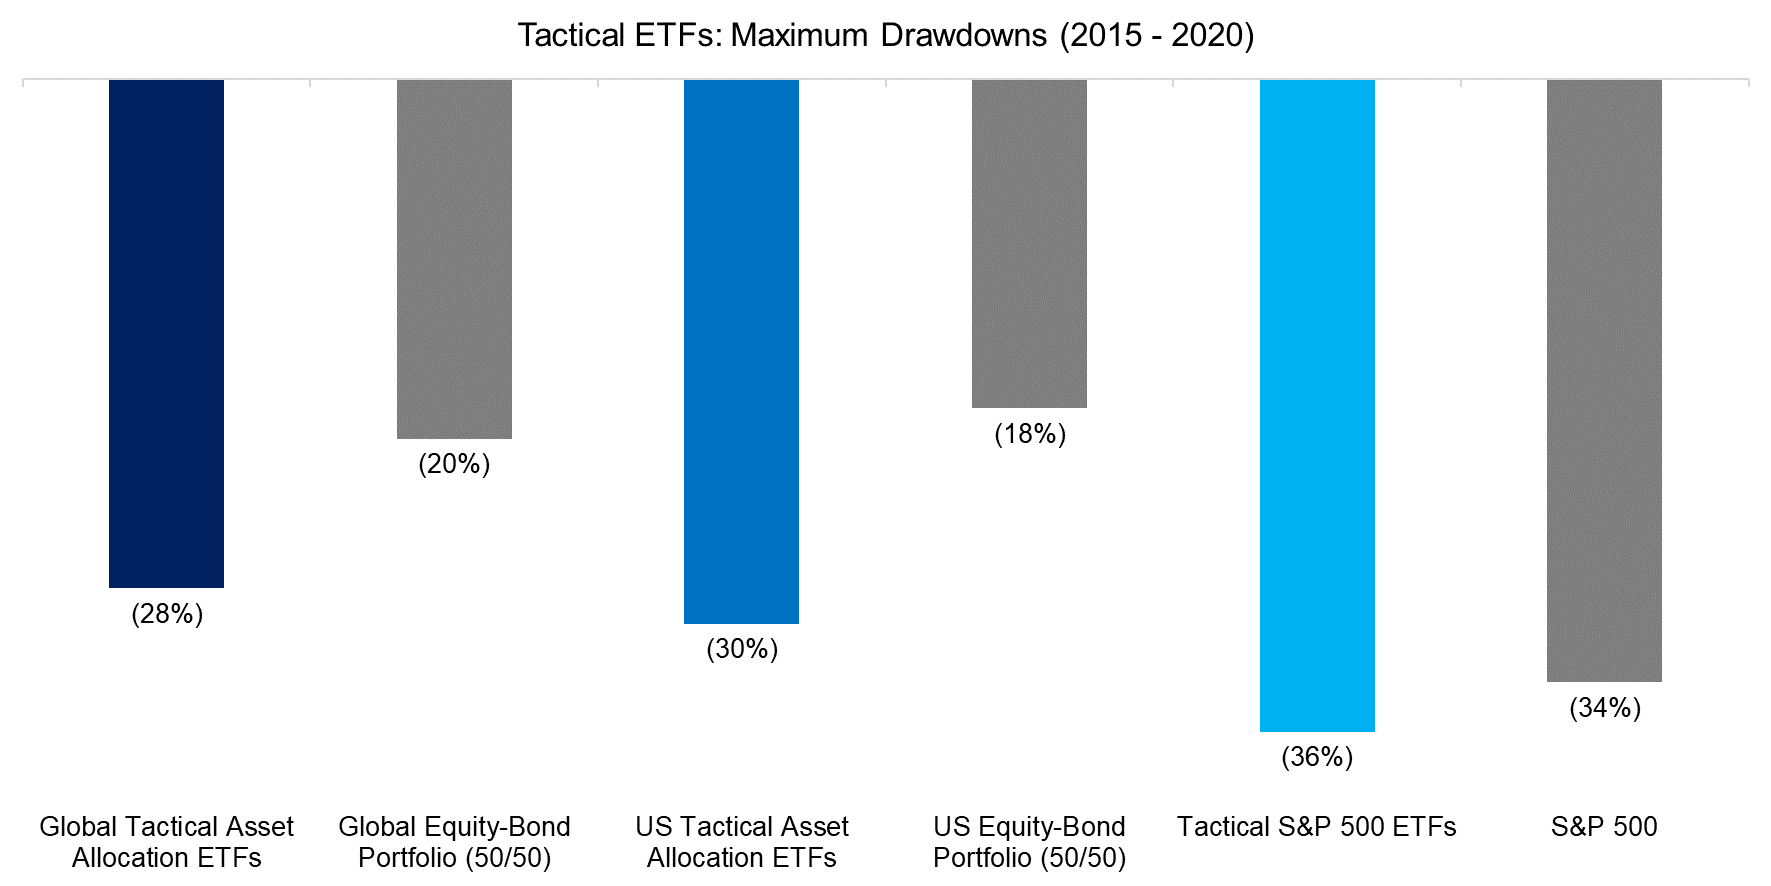 Tactical ETFs Maximum Drawdowns (2015 - 2020)